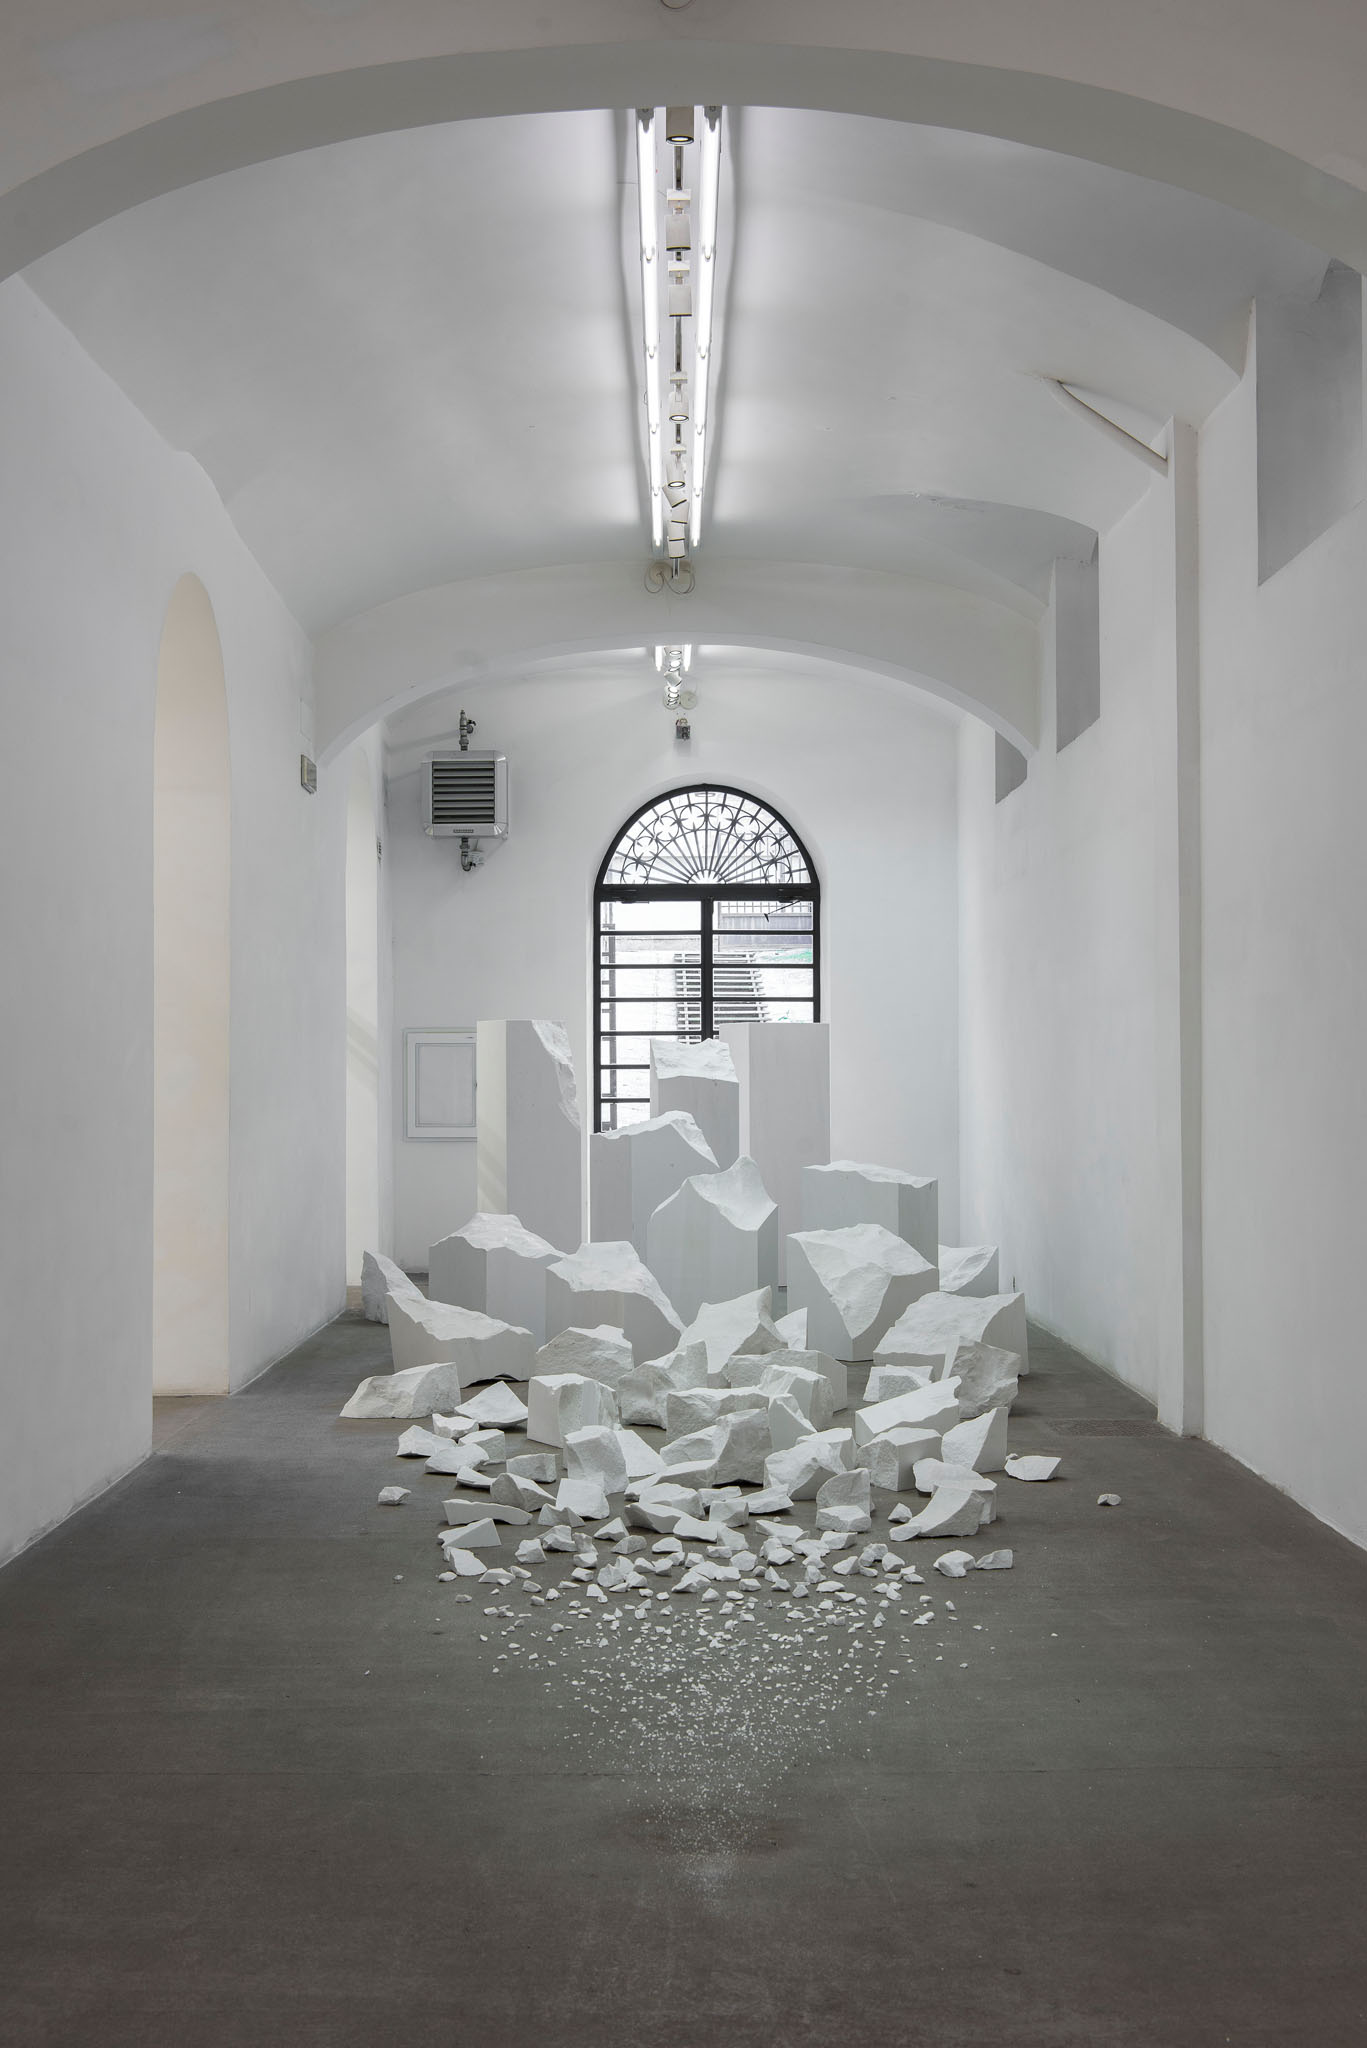 Alicja Kwade, Materia, per ora. Installation view at Fondazione Giuliani, photo by Giorgio Benni